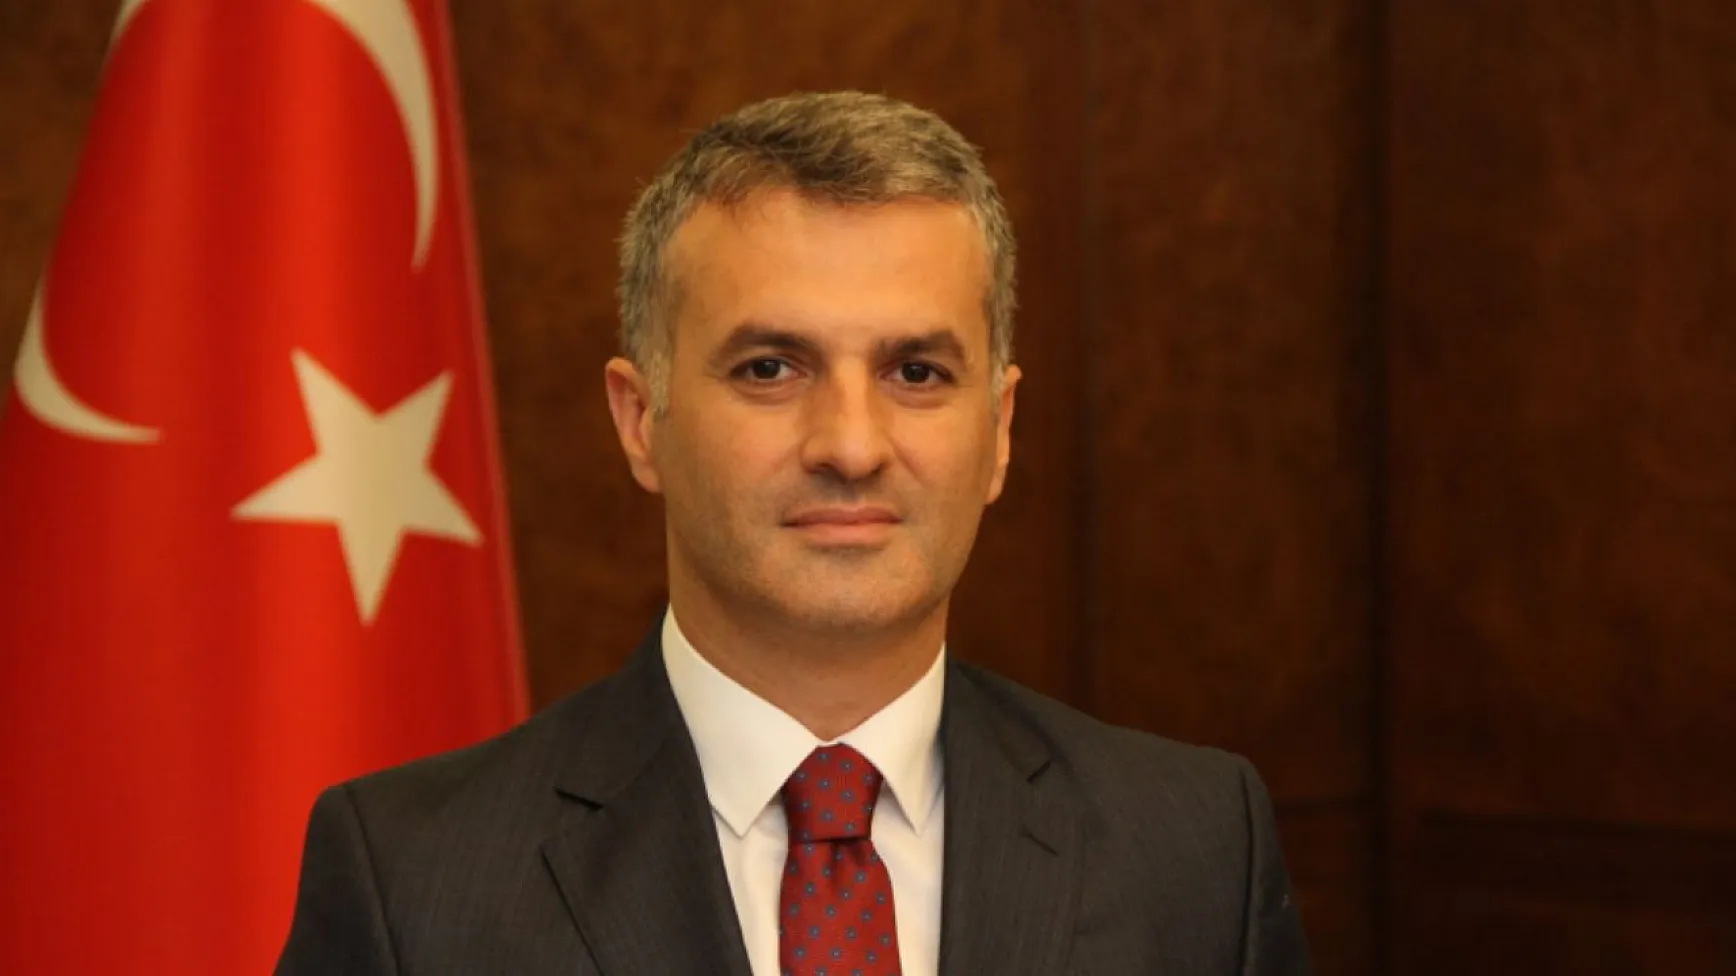 İYİ Partili Belediye Başkanı, Partisinden İstifa Etti